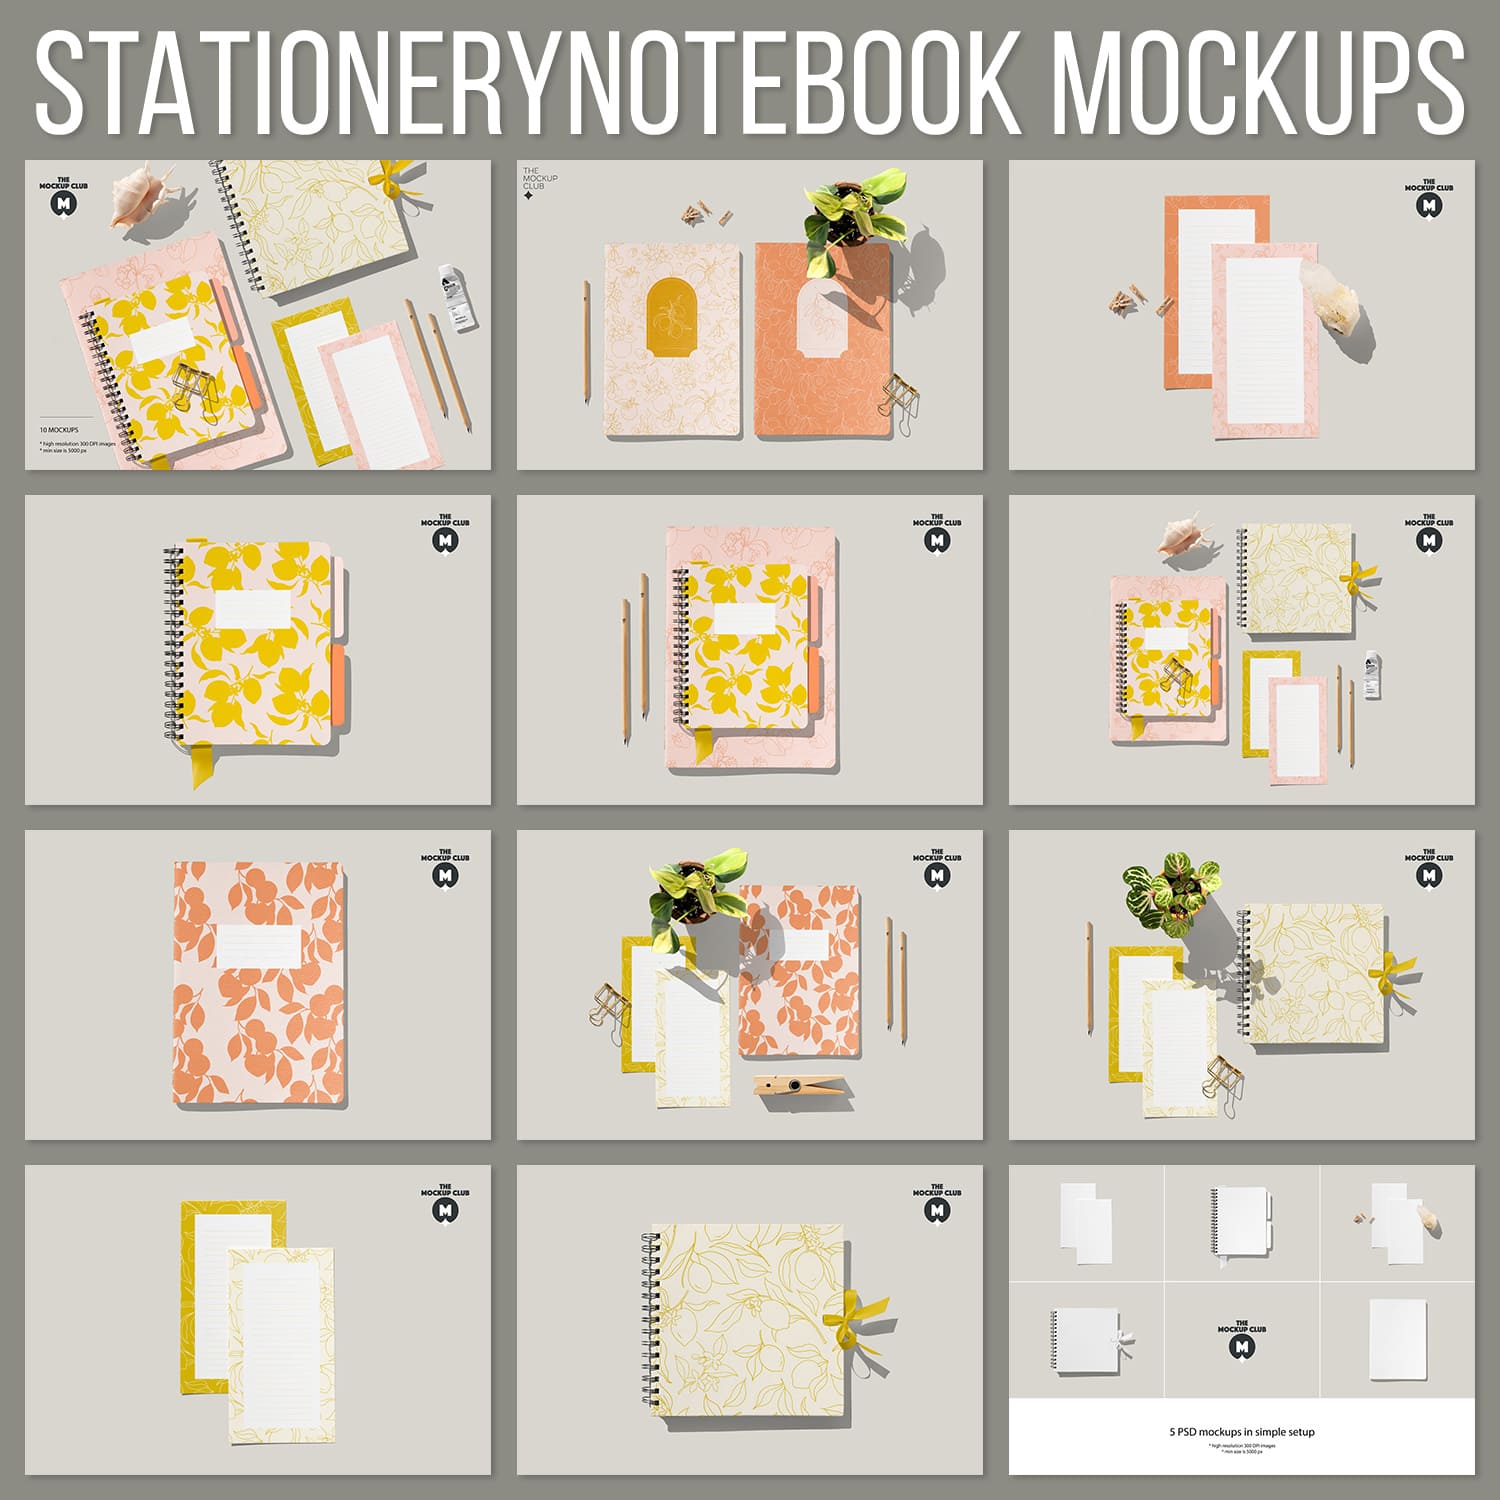 Stationery/ Notebook Mockups.